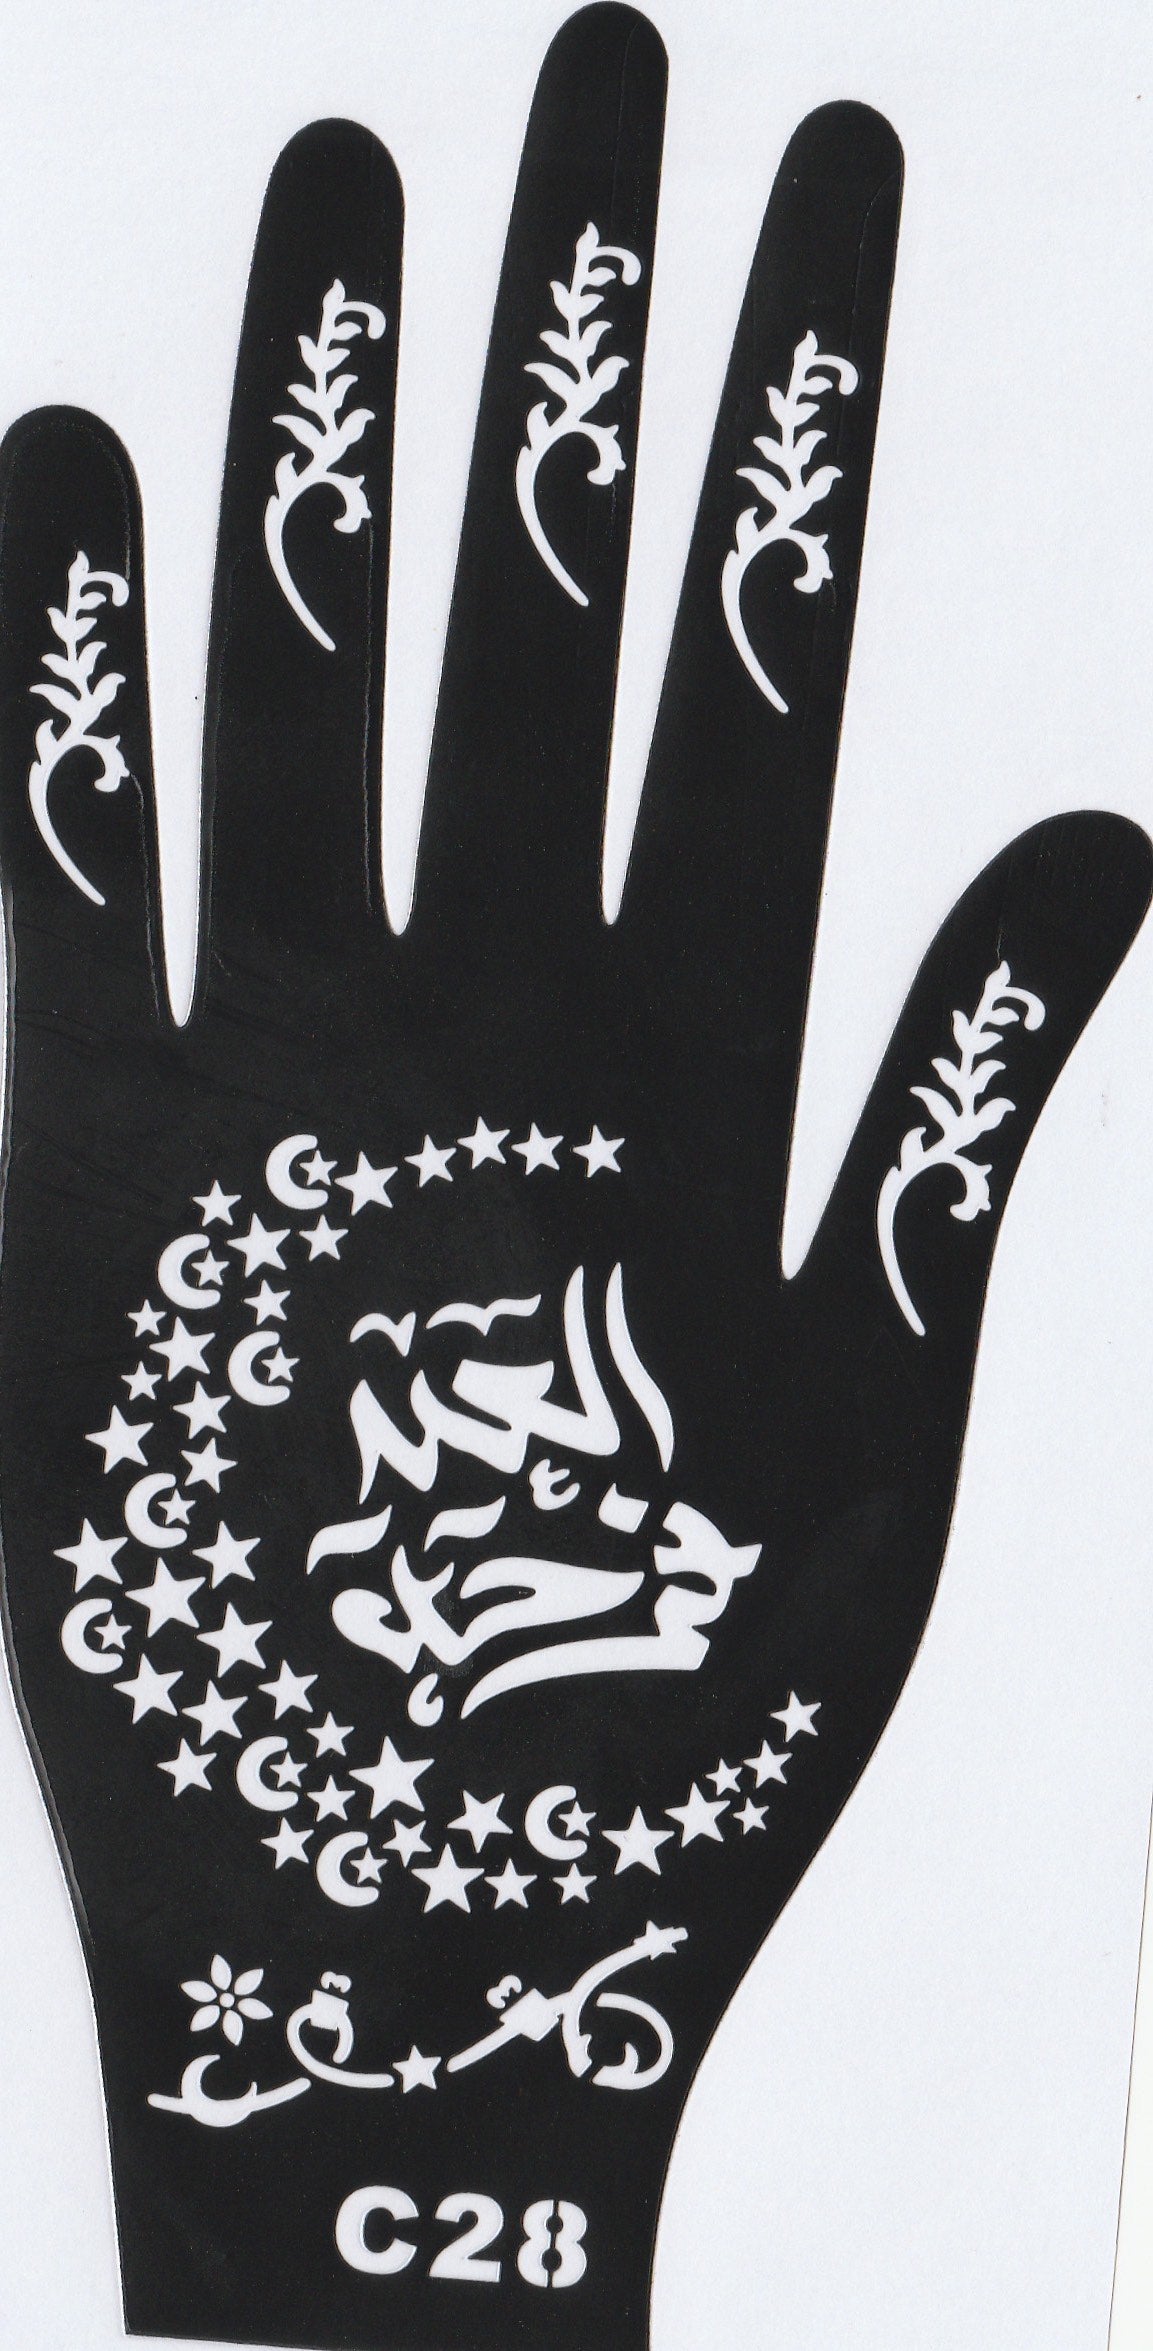 Beautiful Henna Stencils - Both Hands/ Mehendi Designs/ Mehendi DIY Stencil - C28